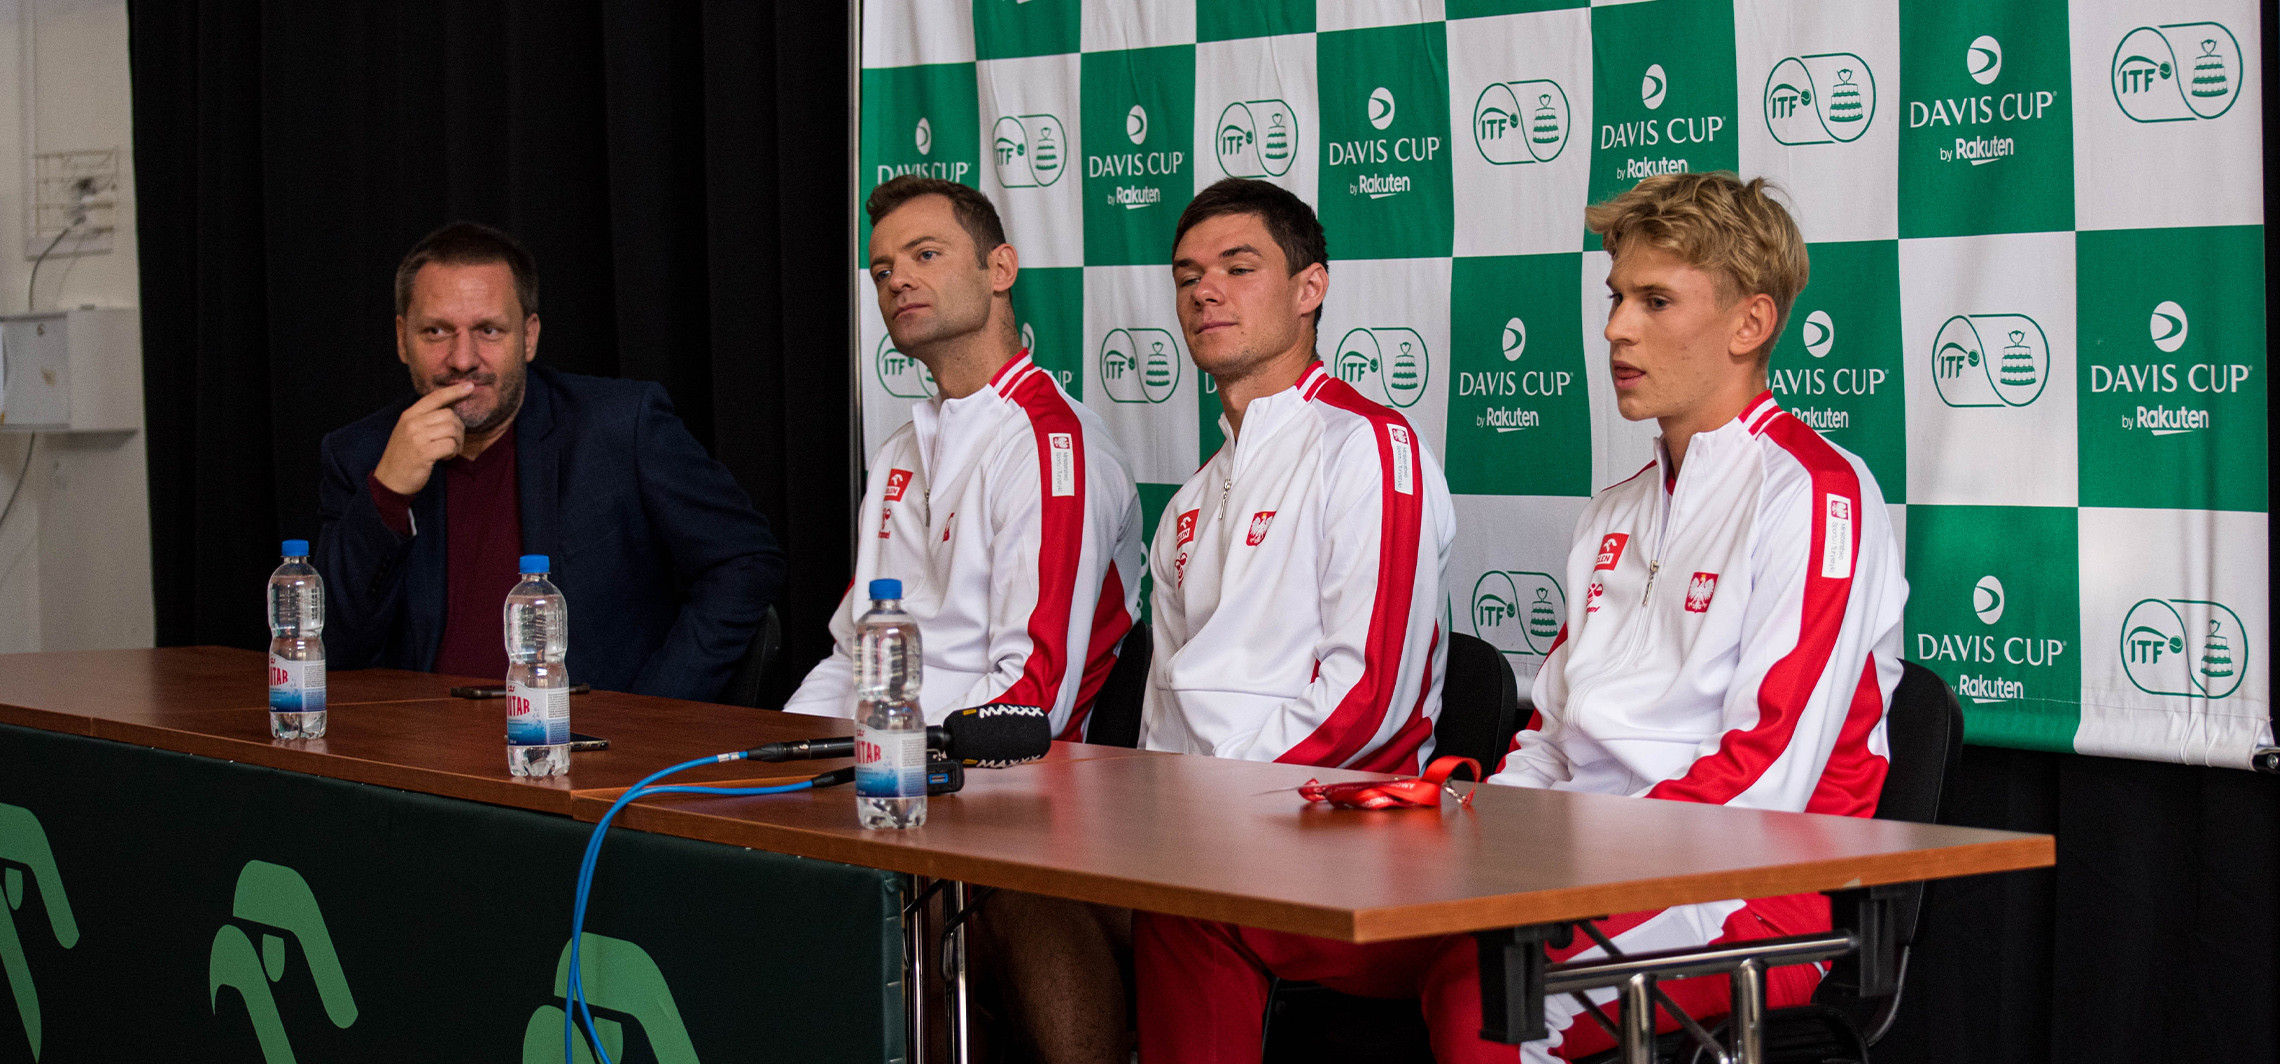 Inowrocław -  W weekend Davis Cup. Jakie nastroje na przedmeczowej konferencji?